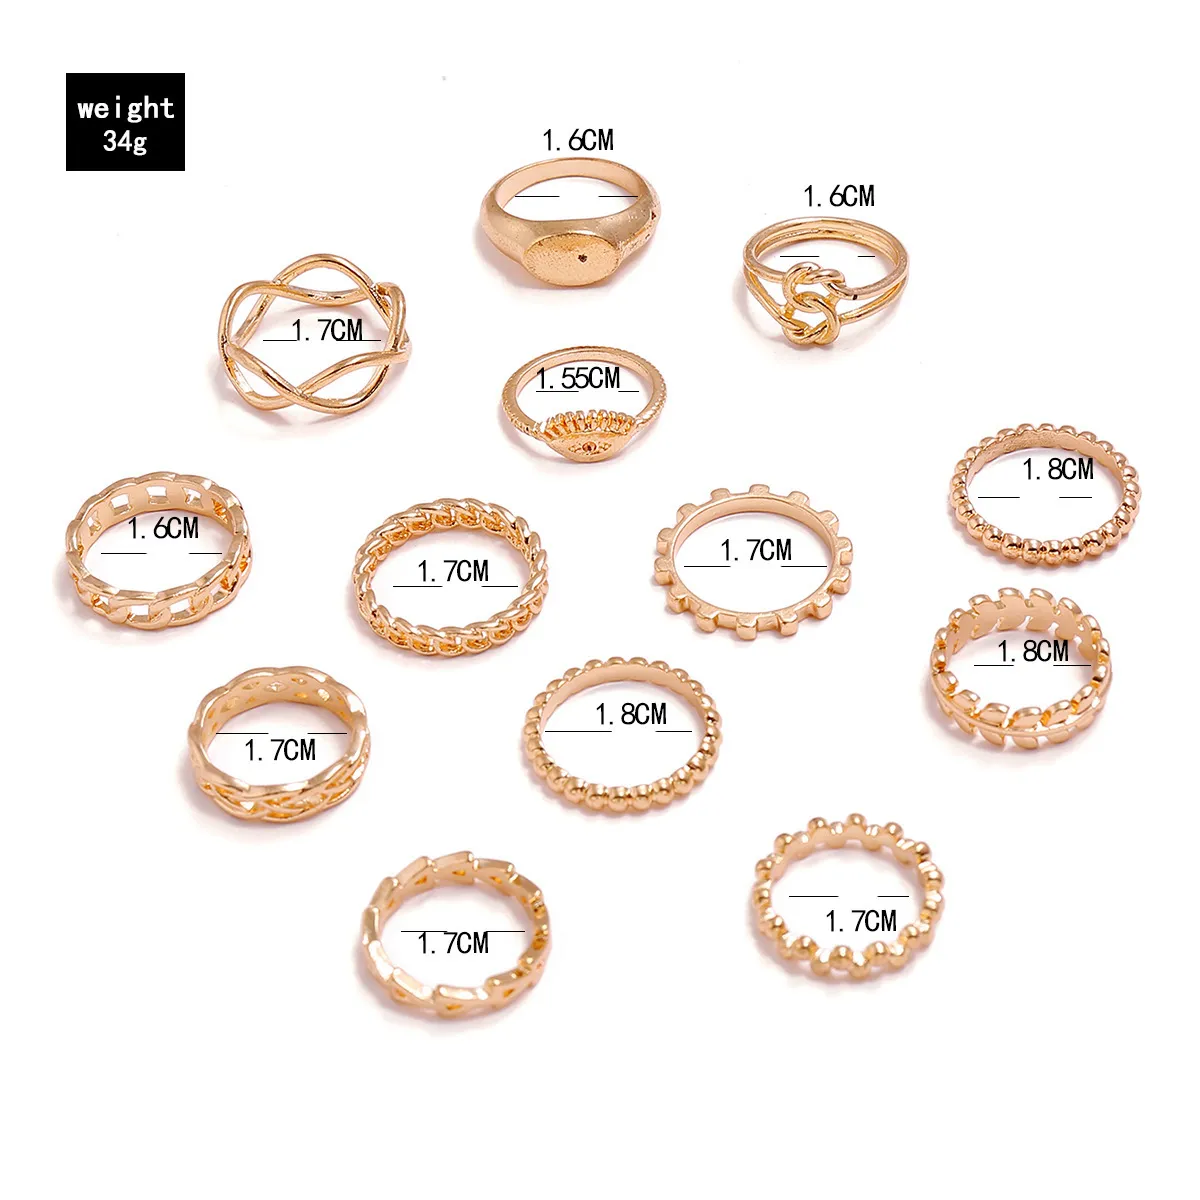 Conjuntos de anillos para mujer 13 unids/lote aro de moda personalidad geométrica tamaño libre Color dorado